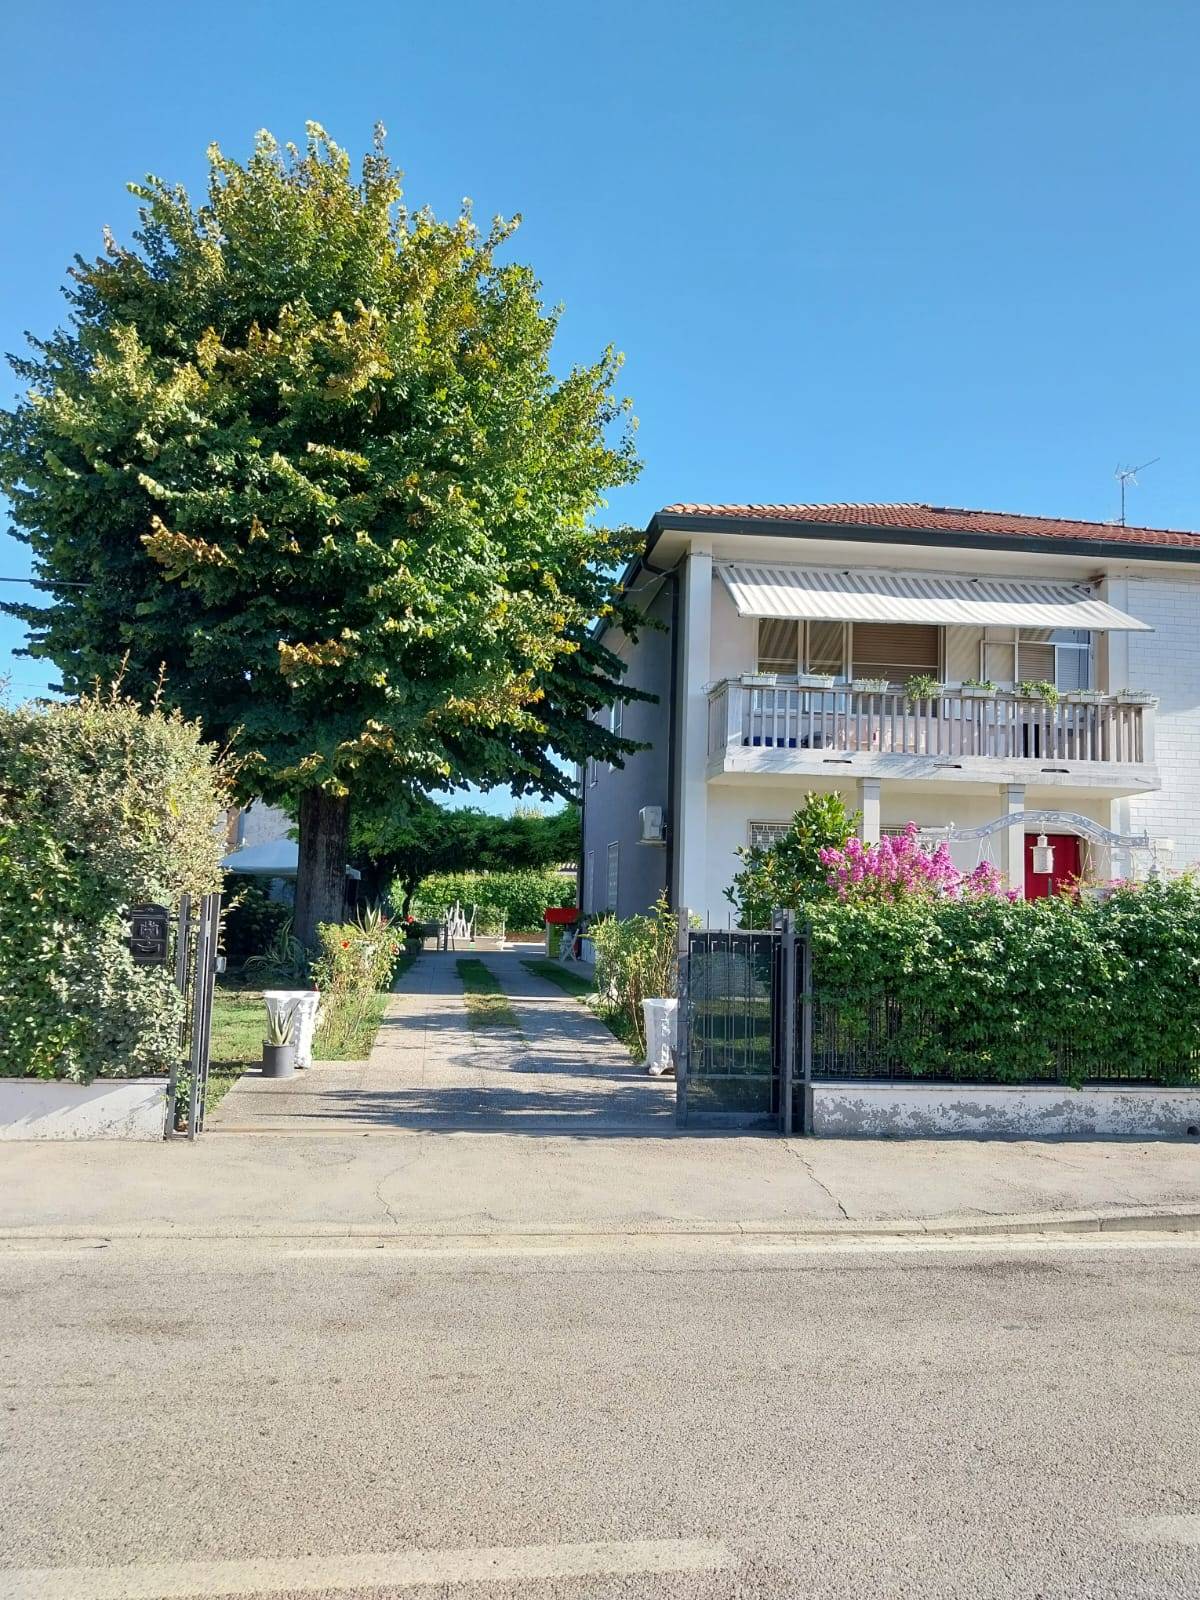 Appartamento in vendita a Ostellato, 6 locali, prezzo € 225.000 | PortaleAgenzieImmobiliari.it